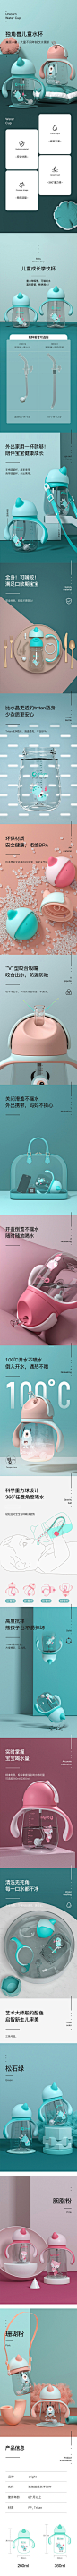 oright儿童吸管杯 母婴用品 产品详情页设计